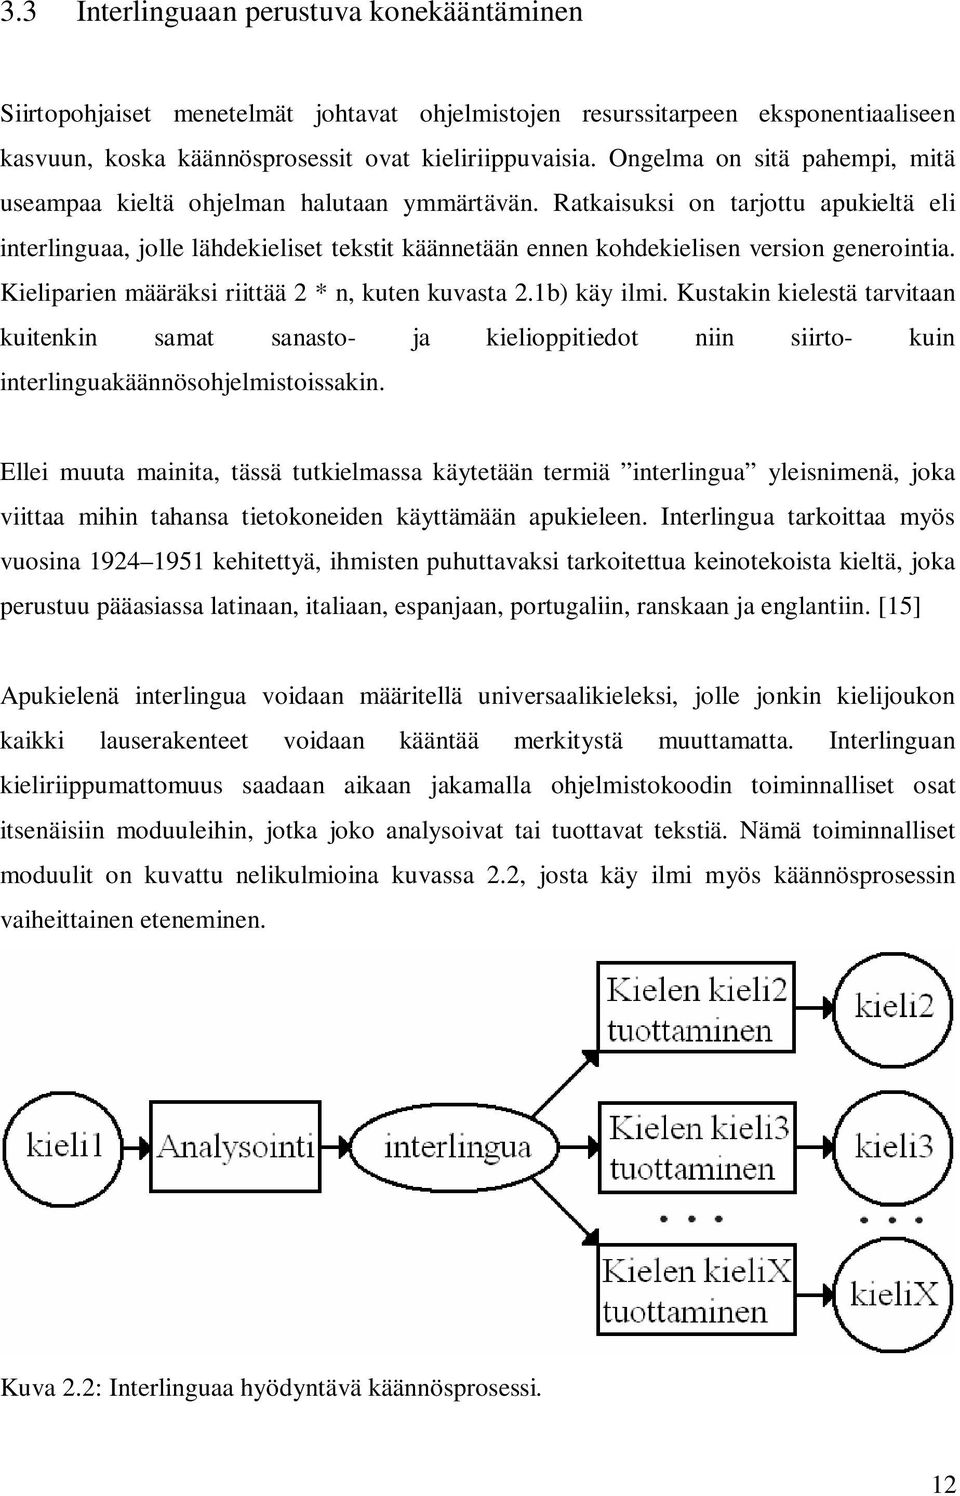 Ratkaisuksi on tarjottu apukieltä eli interlinguaa, jolle lähdekieliset tekstit käännetään ennen kohdekielisen version generointia. Kieliparien määräksi riittää 2 * n, kuten kuvasta 2.1b) käy ilmi.